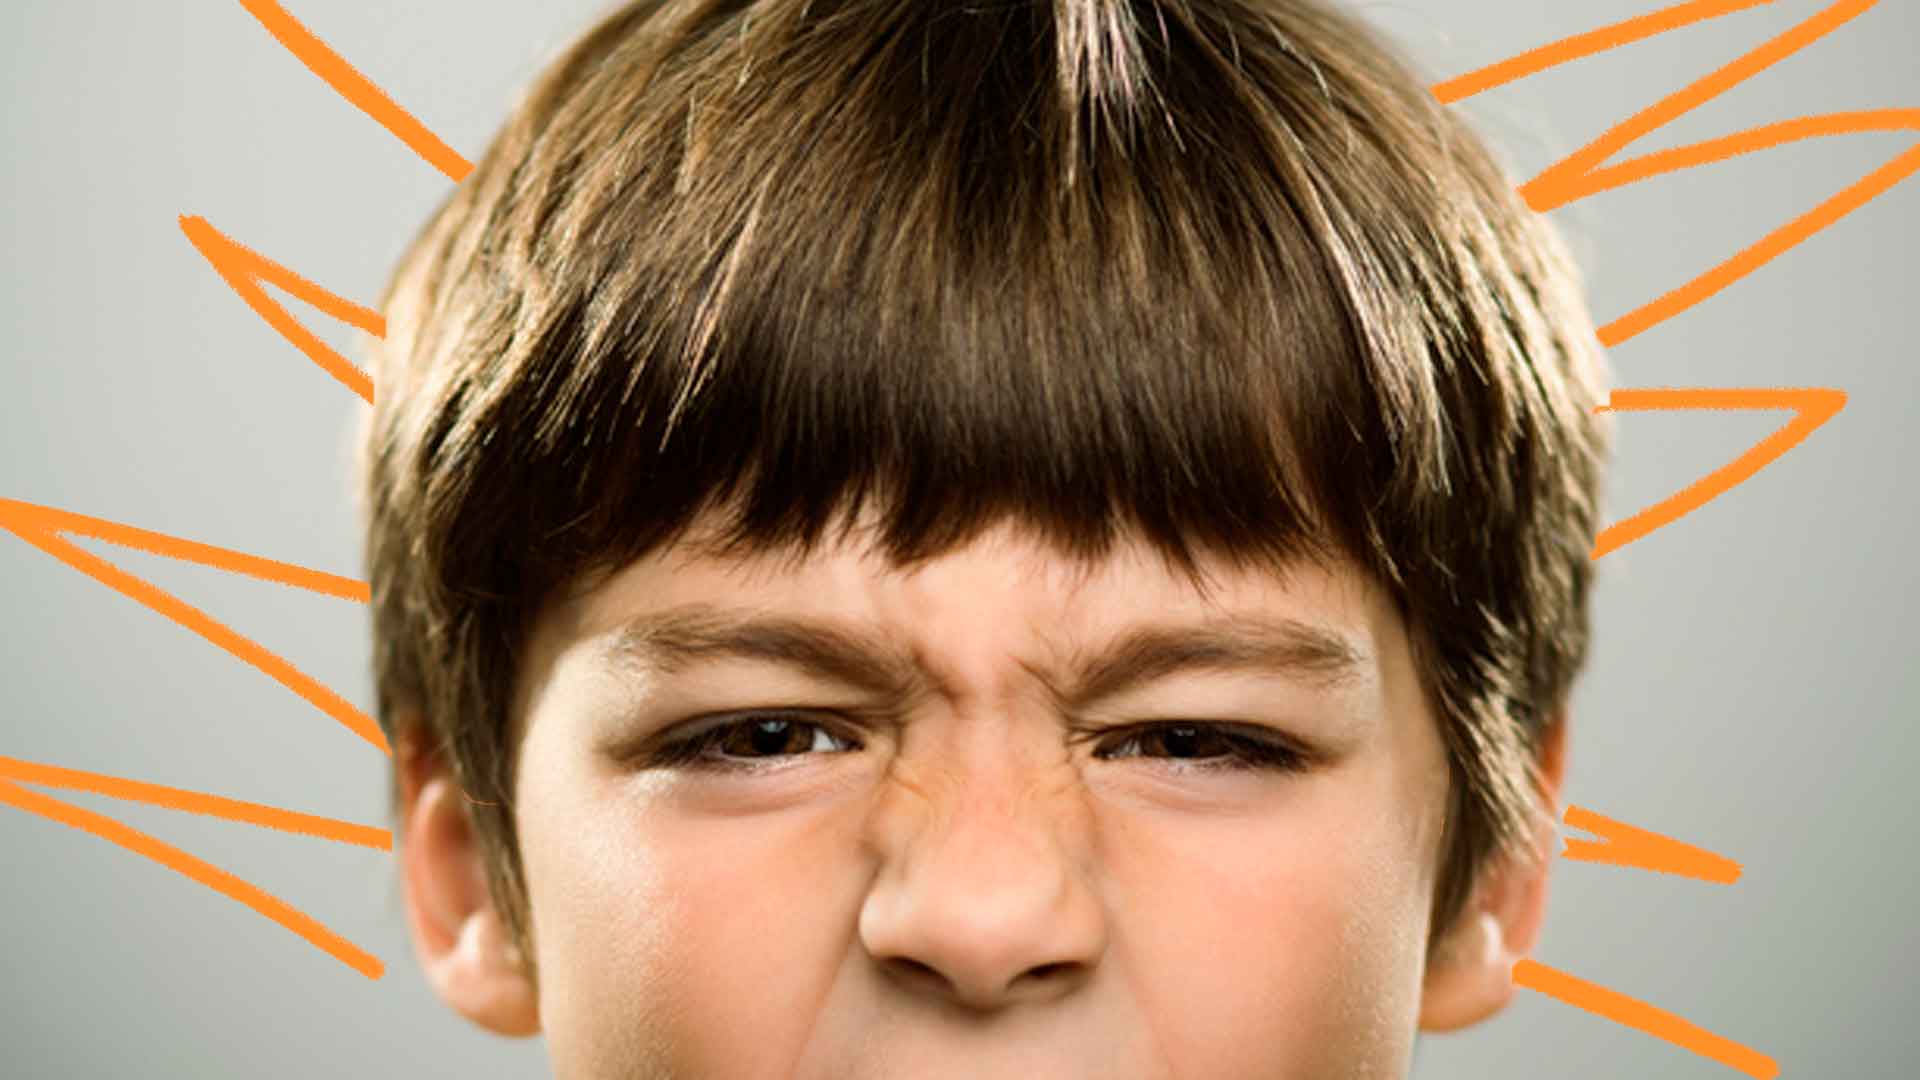 Foto de um menino com os olhos contraídos mostrando irritação